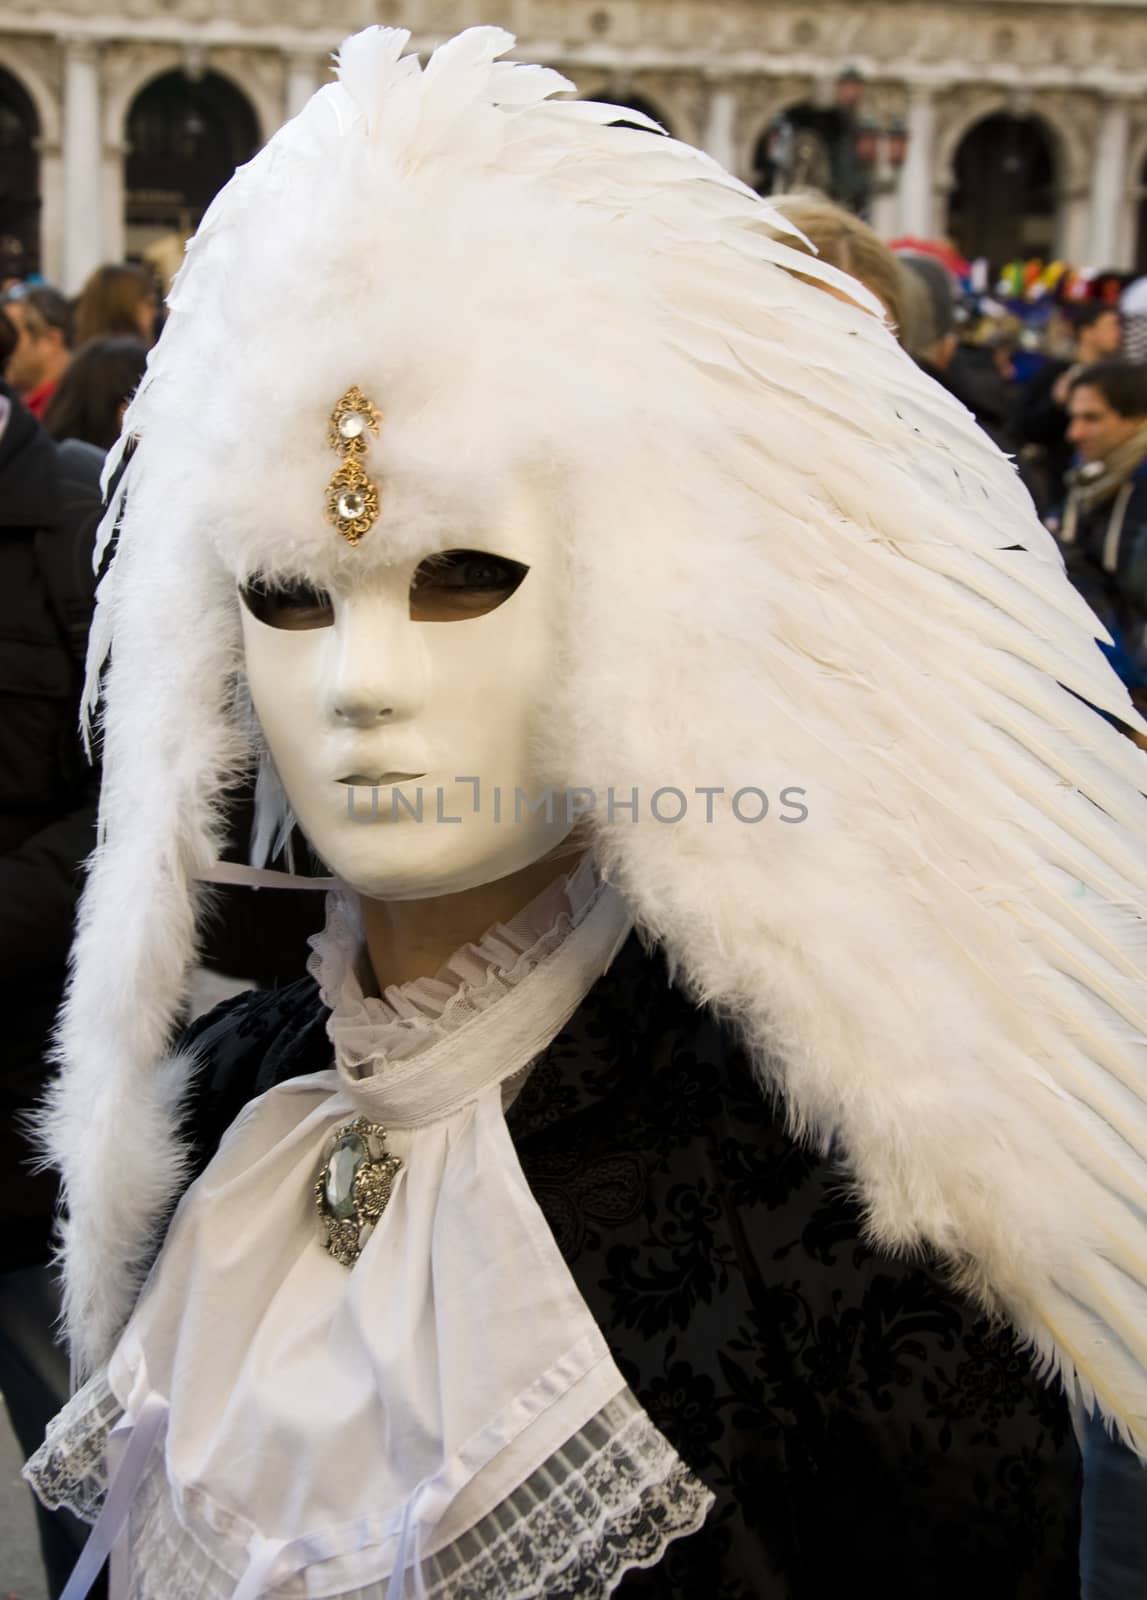 Venice Carnival Celebration Event in Saint Mark Square  by jelen80